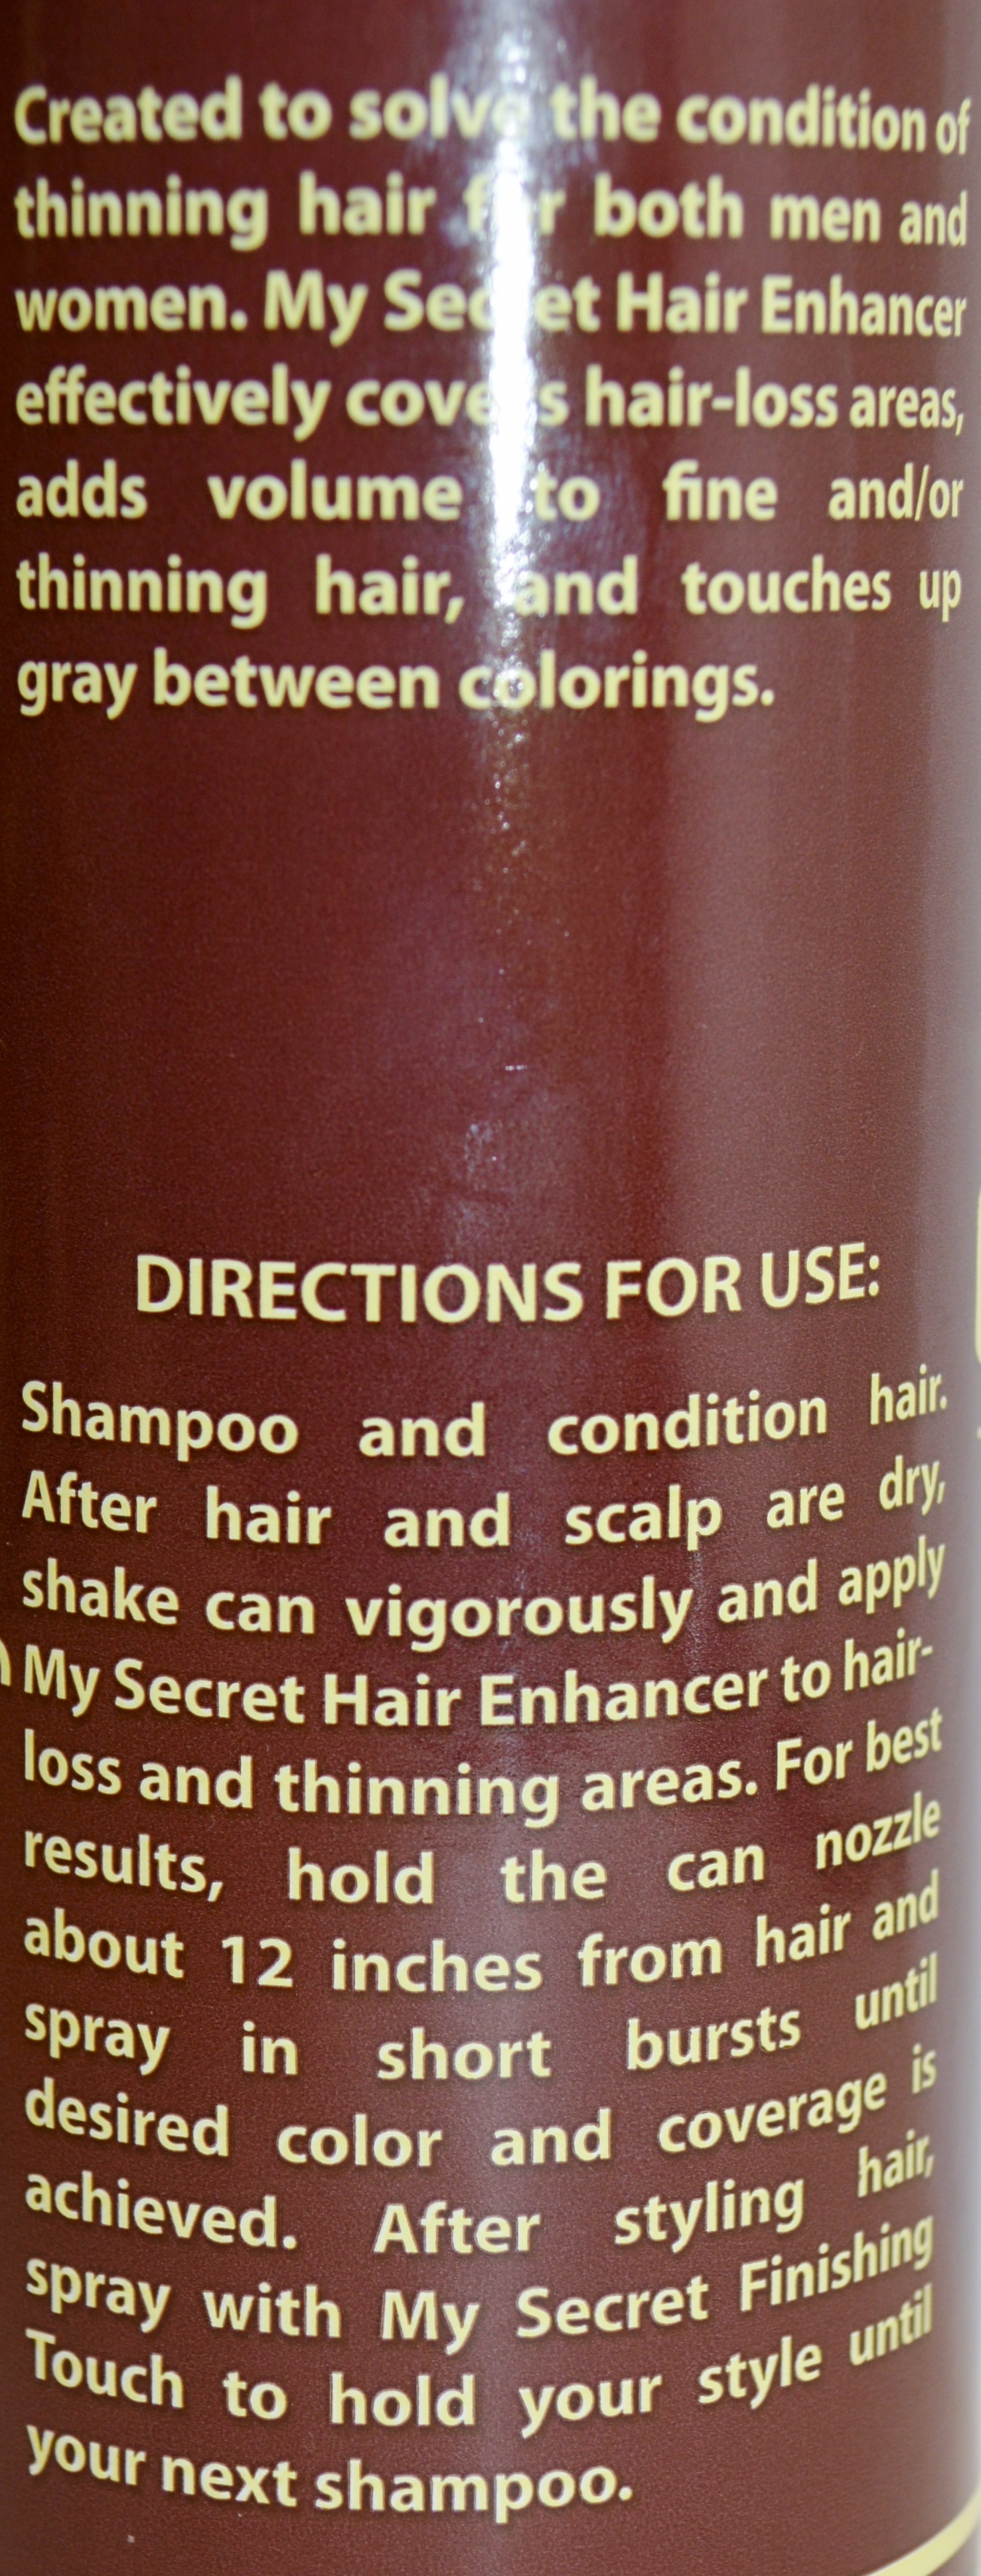 My Secret Hair Enhancing Spray